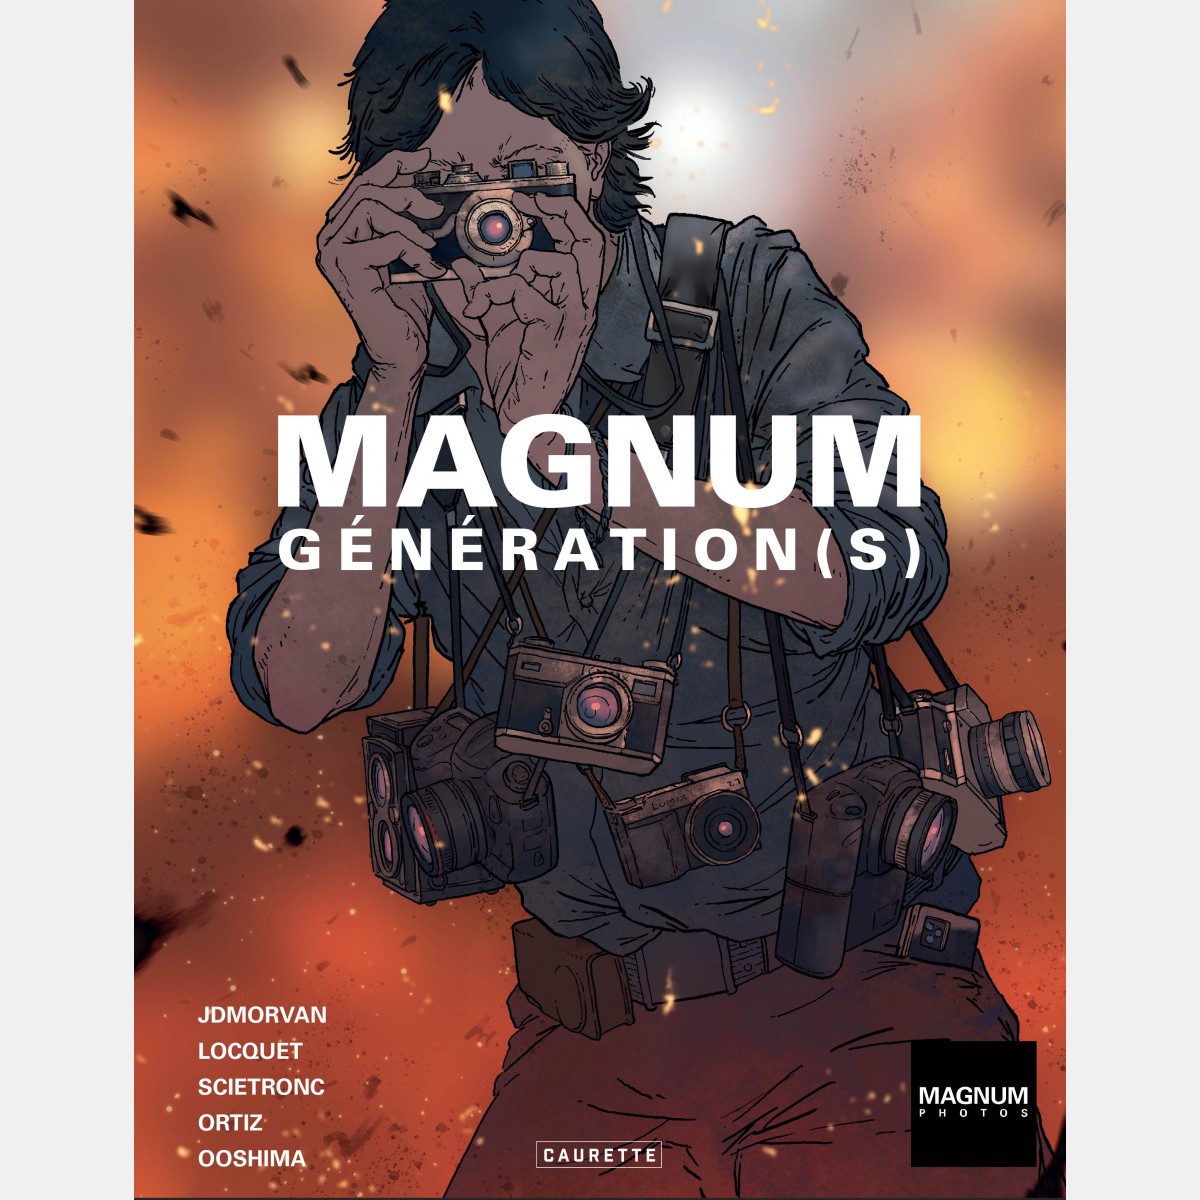 Magnum Génération(s) (French)